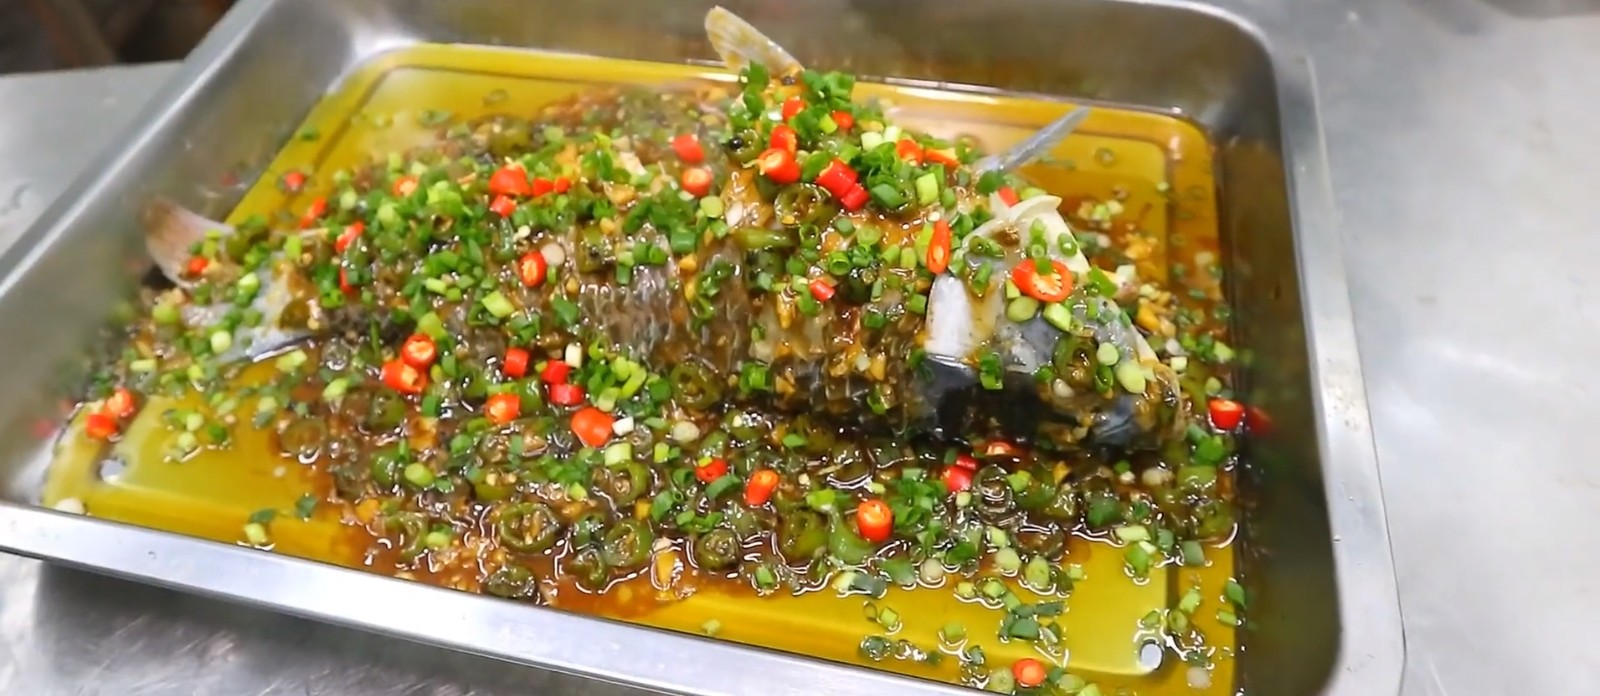 鲤鱼怎样做才好吃?大厨分享鲜椒鲤鱼的家常做法,香辣开胃肉质嫩